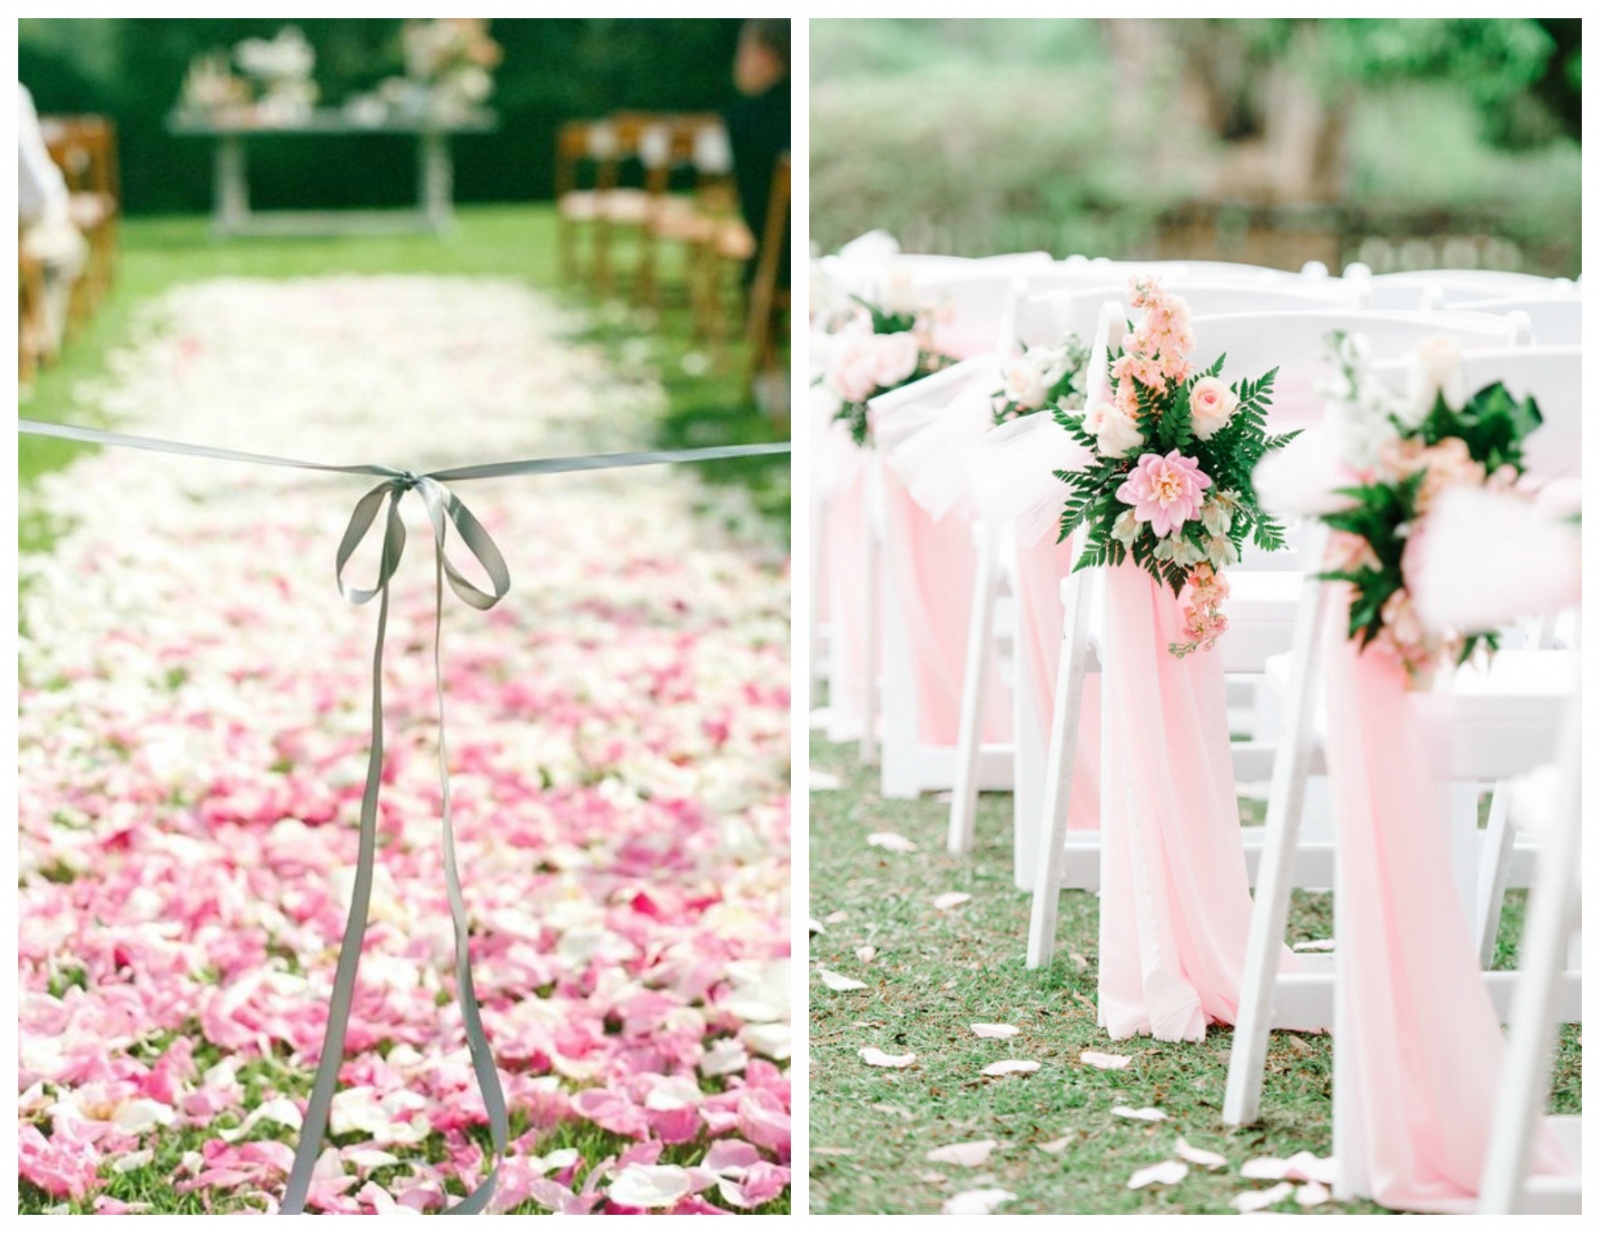 millennial pink, millennial pink wedding, pink wedding, pink wedding chairs, pink wedding aisle, pink petals, pink petals wedding